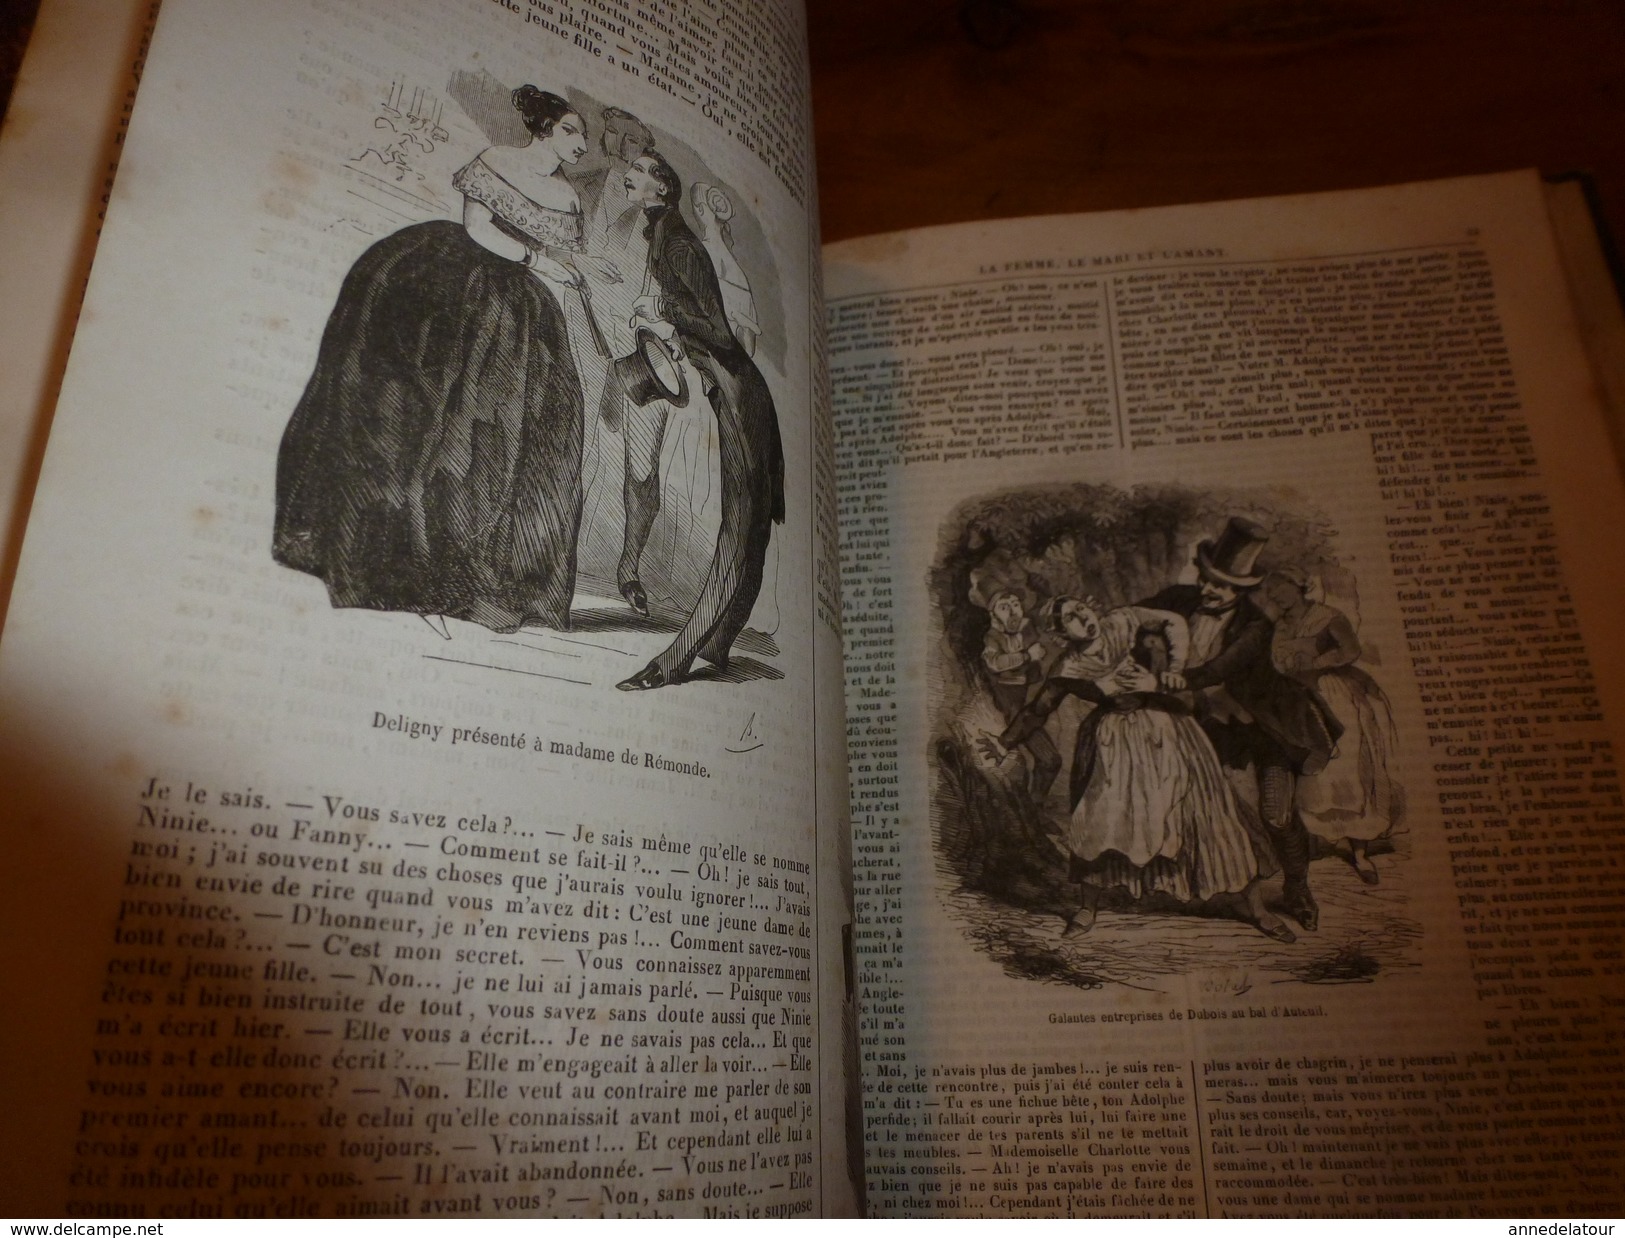 1849  Romans,Contes et Nouvelles illustrés: Aventures des Femmes Lanternier au Maroc;La Femme,Le mari et l'Amant; etc